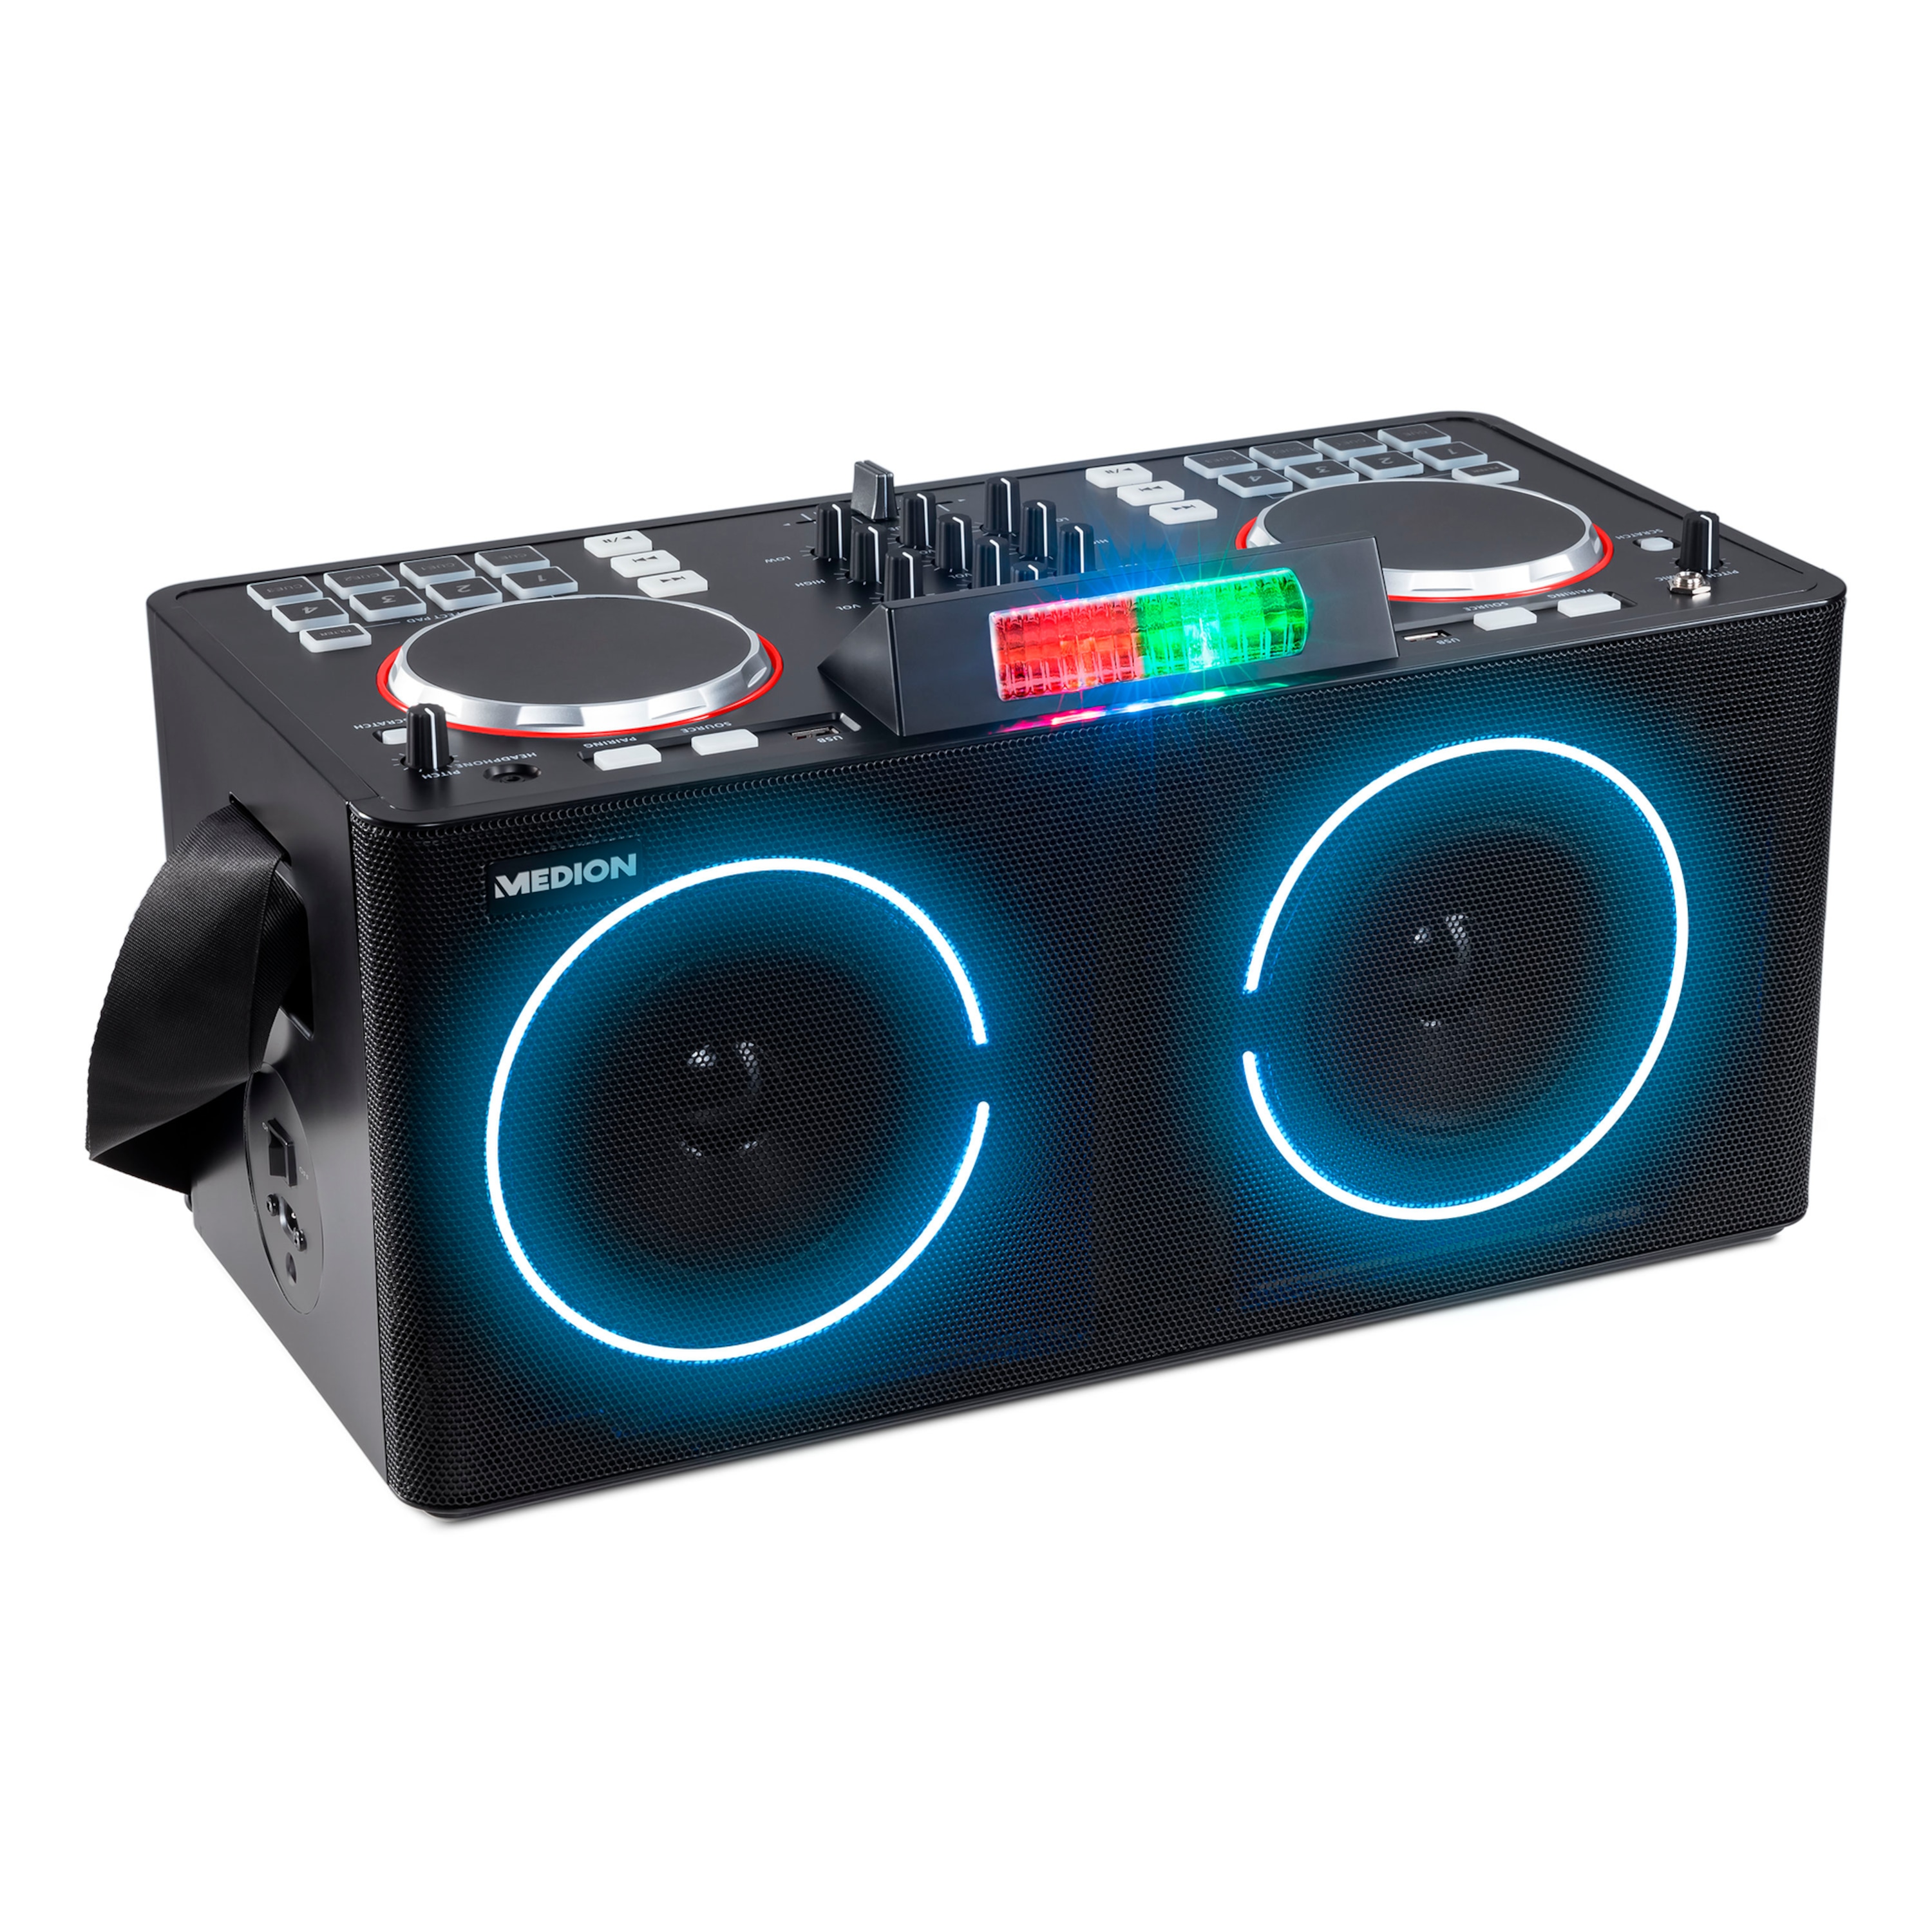 LIFE X61420 Party Speaker | met DJ-controller | 2 LC-displays | 8 Multifunctionele performance pads | LED lichteffecten | 2 x 20 W RMS